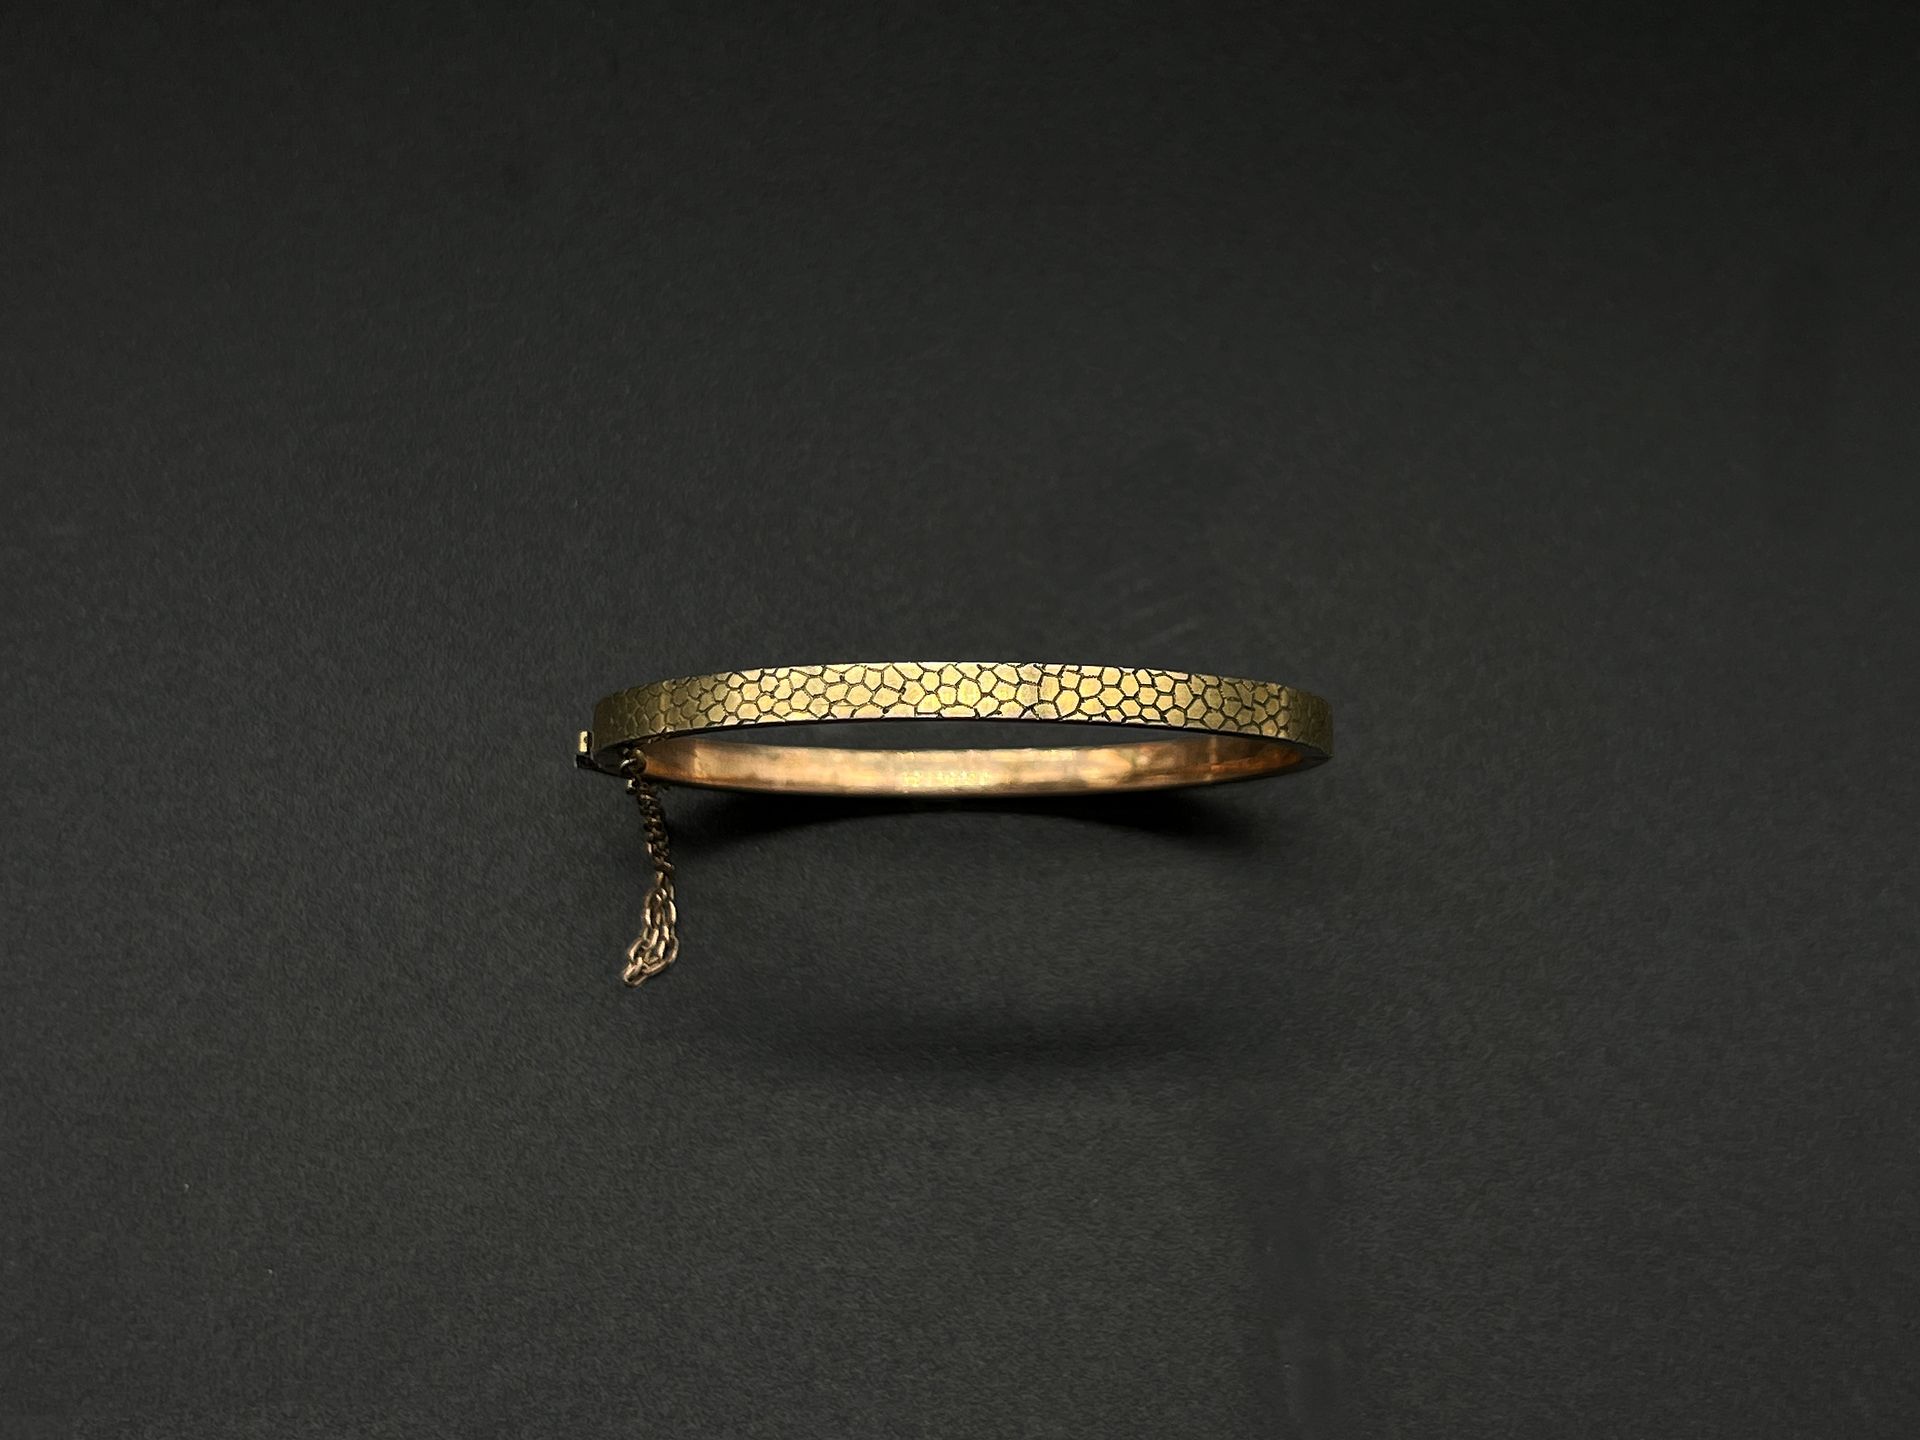 Null Pulsera de brazalete de oro amarillo y rosa (750) con diseño de escamas.

C&hellip;